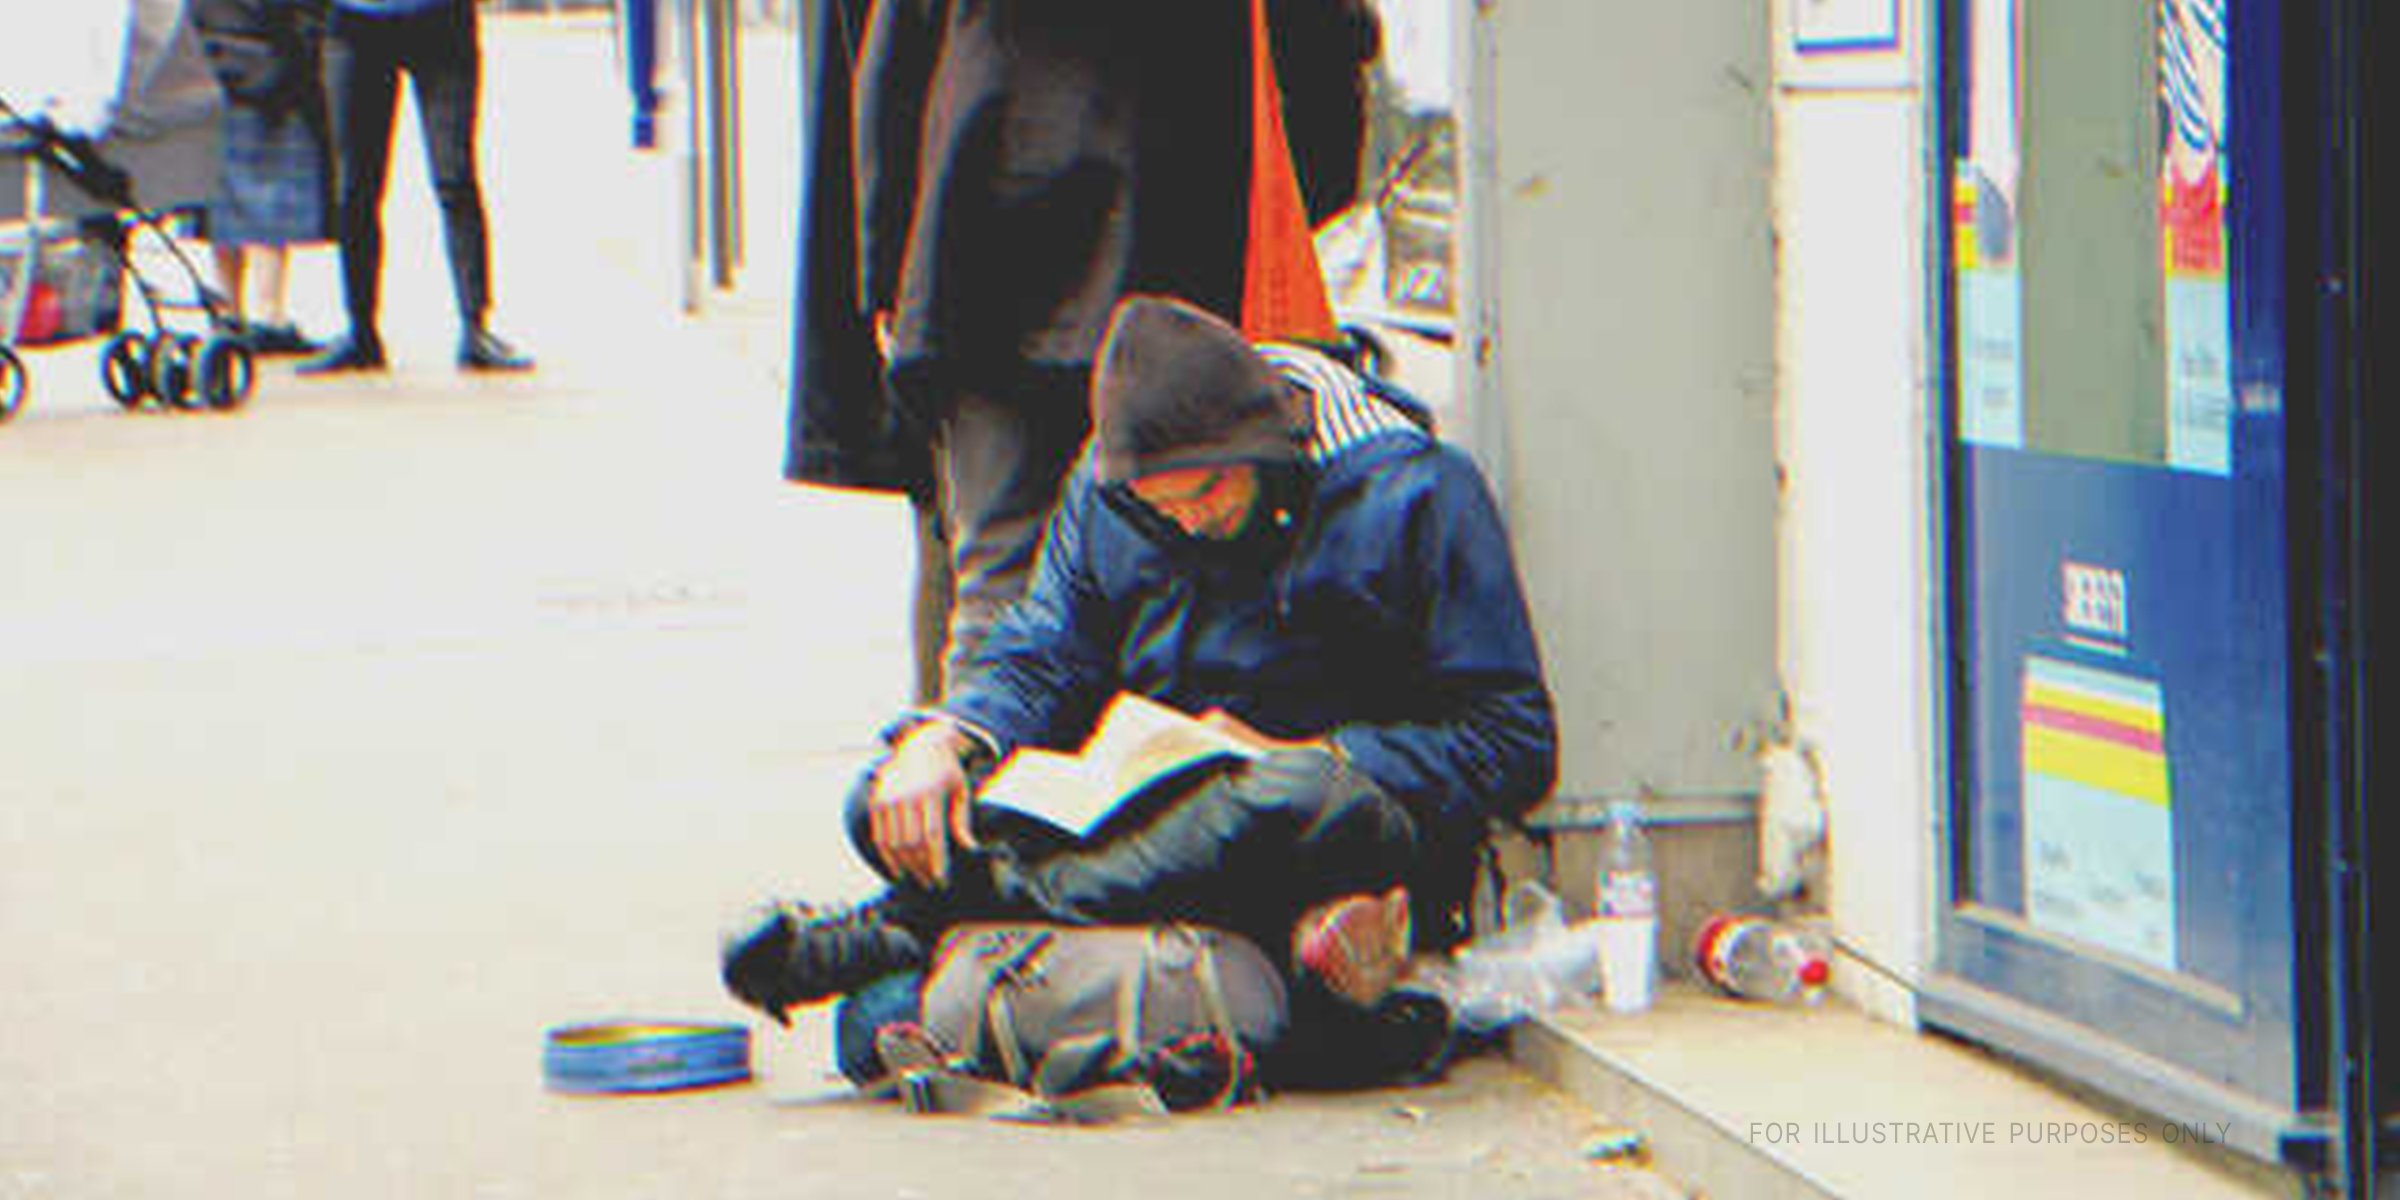 A homeless man reading a book | Source: Shutterstock